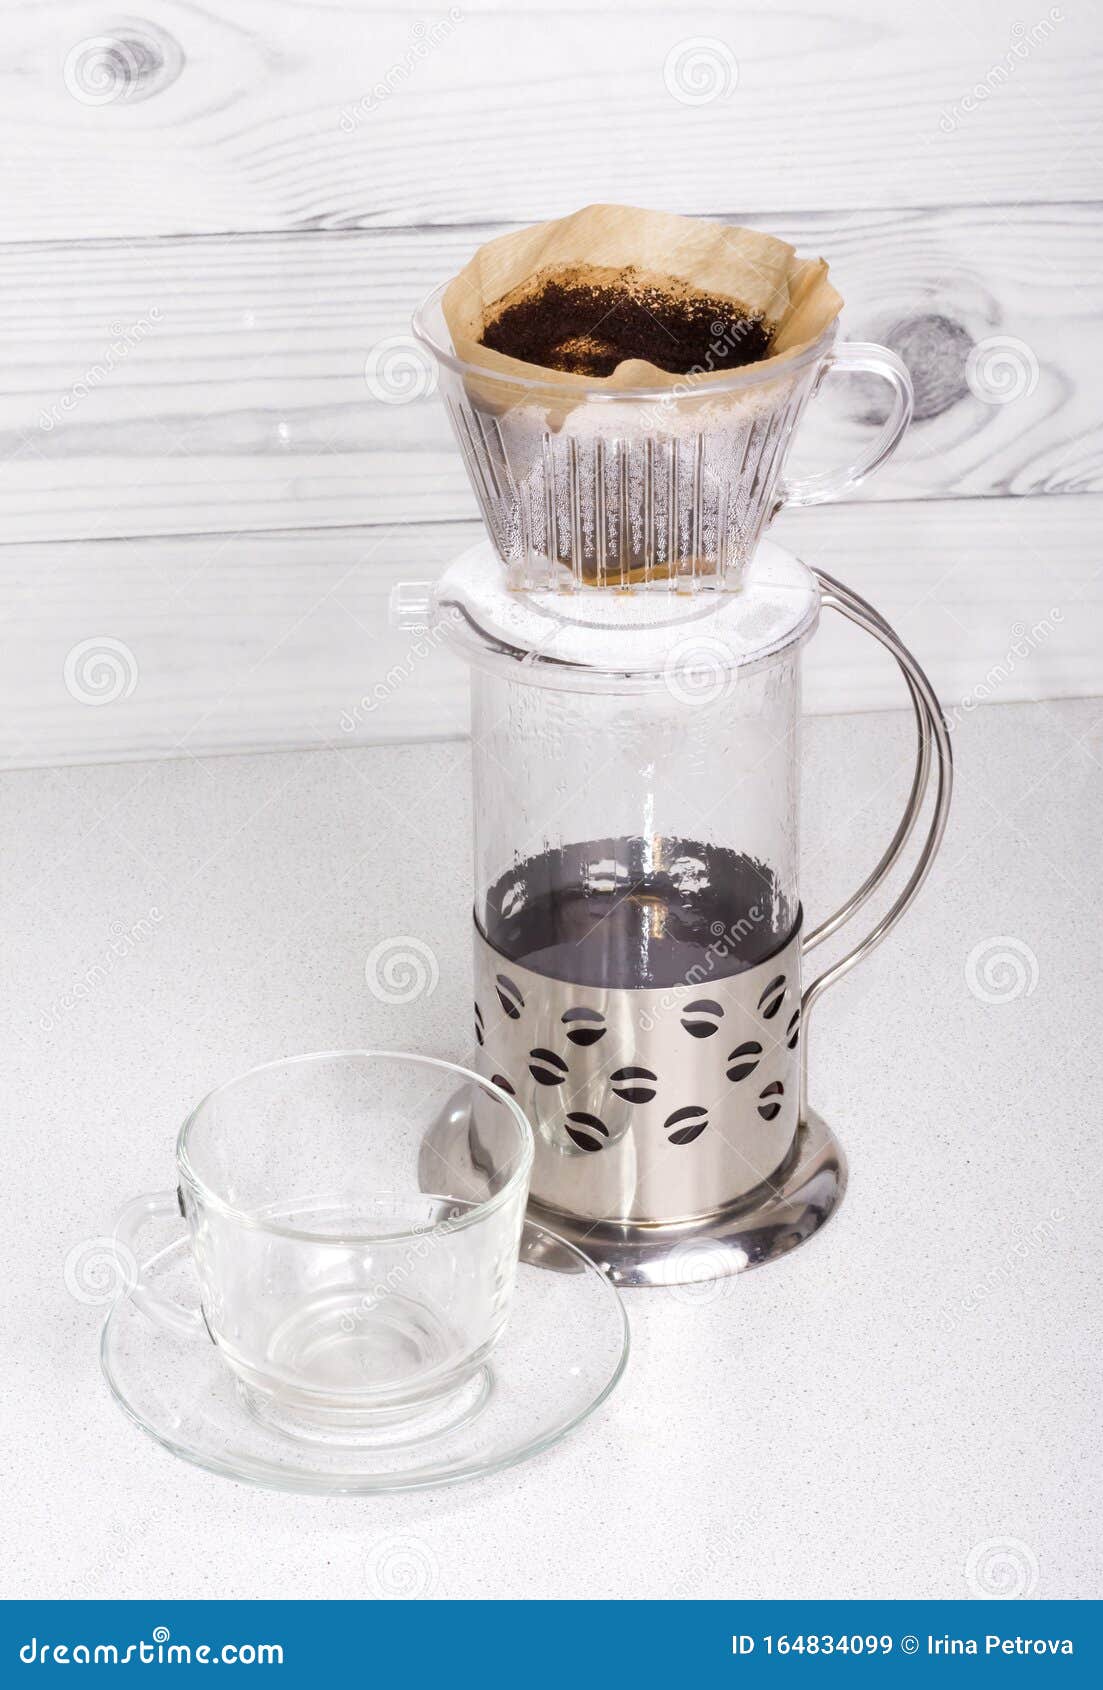 Immagini Stock - Caffettiera Francese Con Una Tazza Di Caffè E